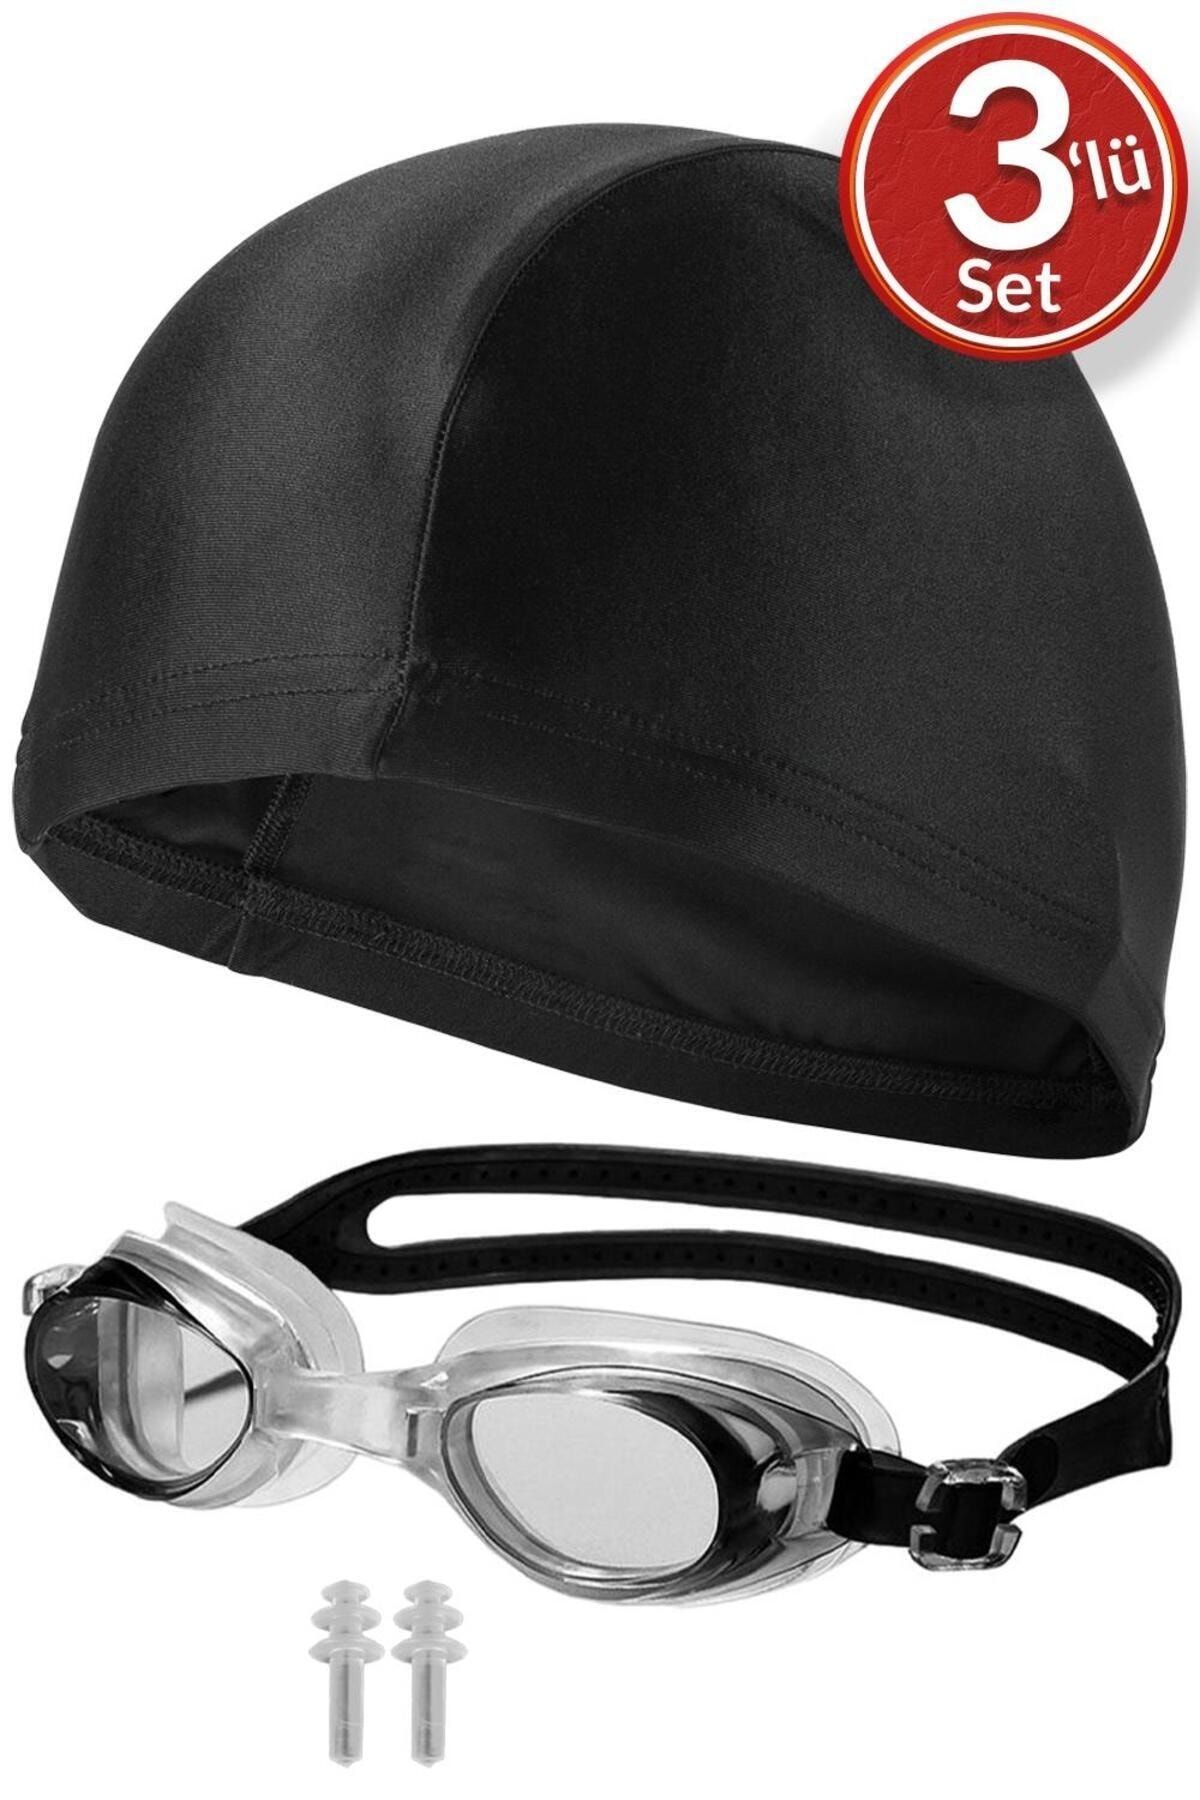 Telvesse 3lü Set Yüzücü Gözlüğü Kumaş Bone Kulak Tıkaçlı Set Yüzme Havuz Deniz Gözlüğü Siyah